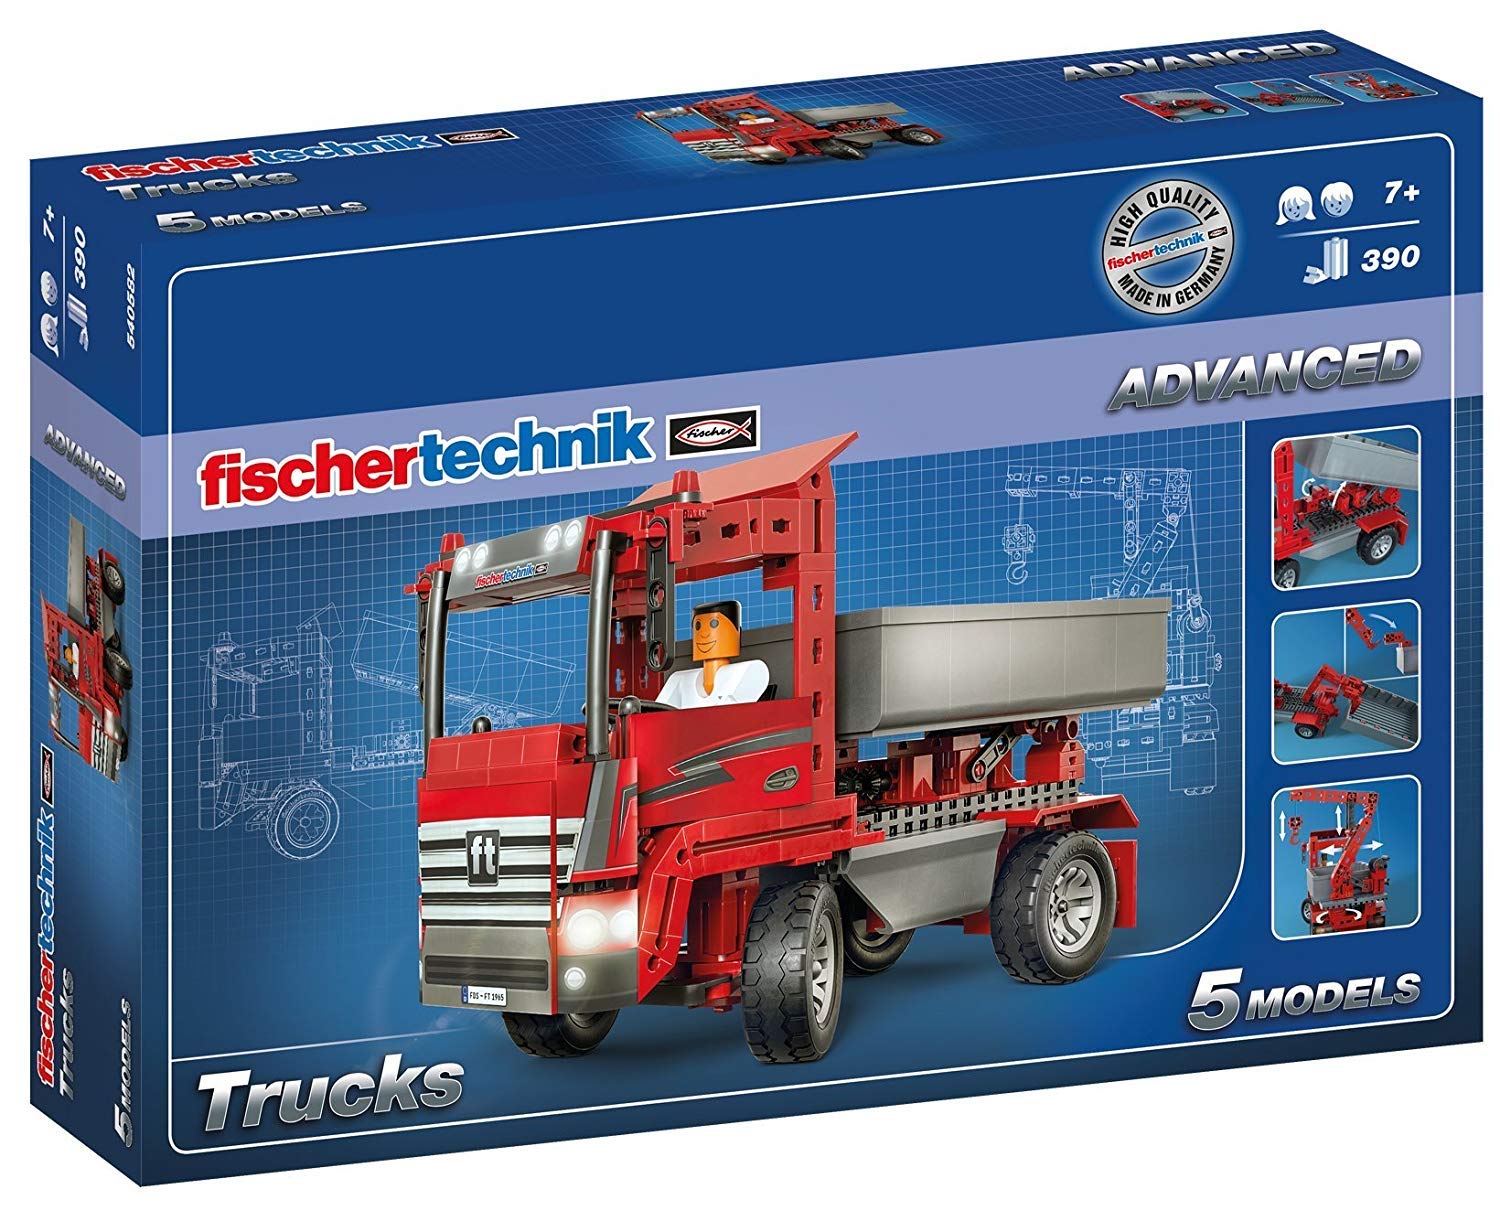 Fischertechnik Fishing Equipment Trucks